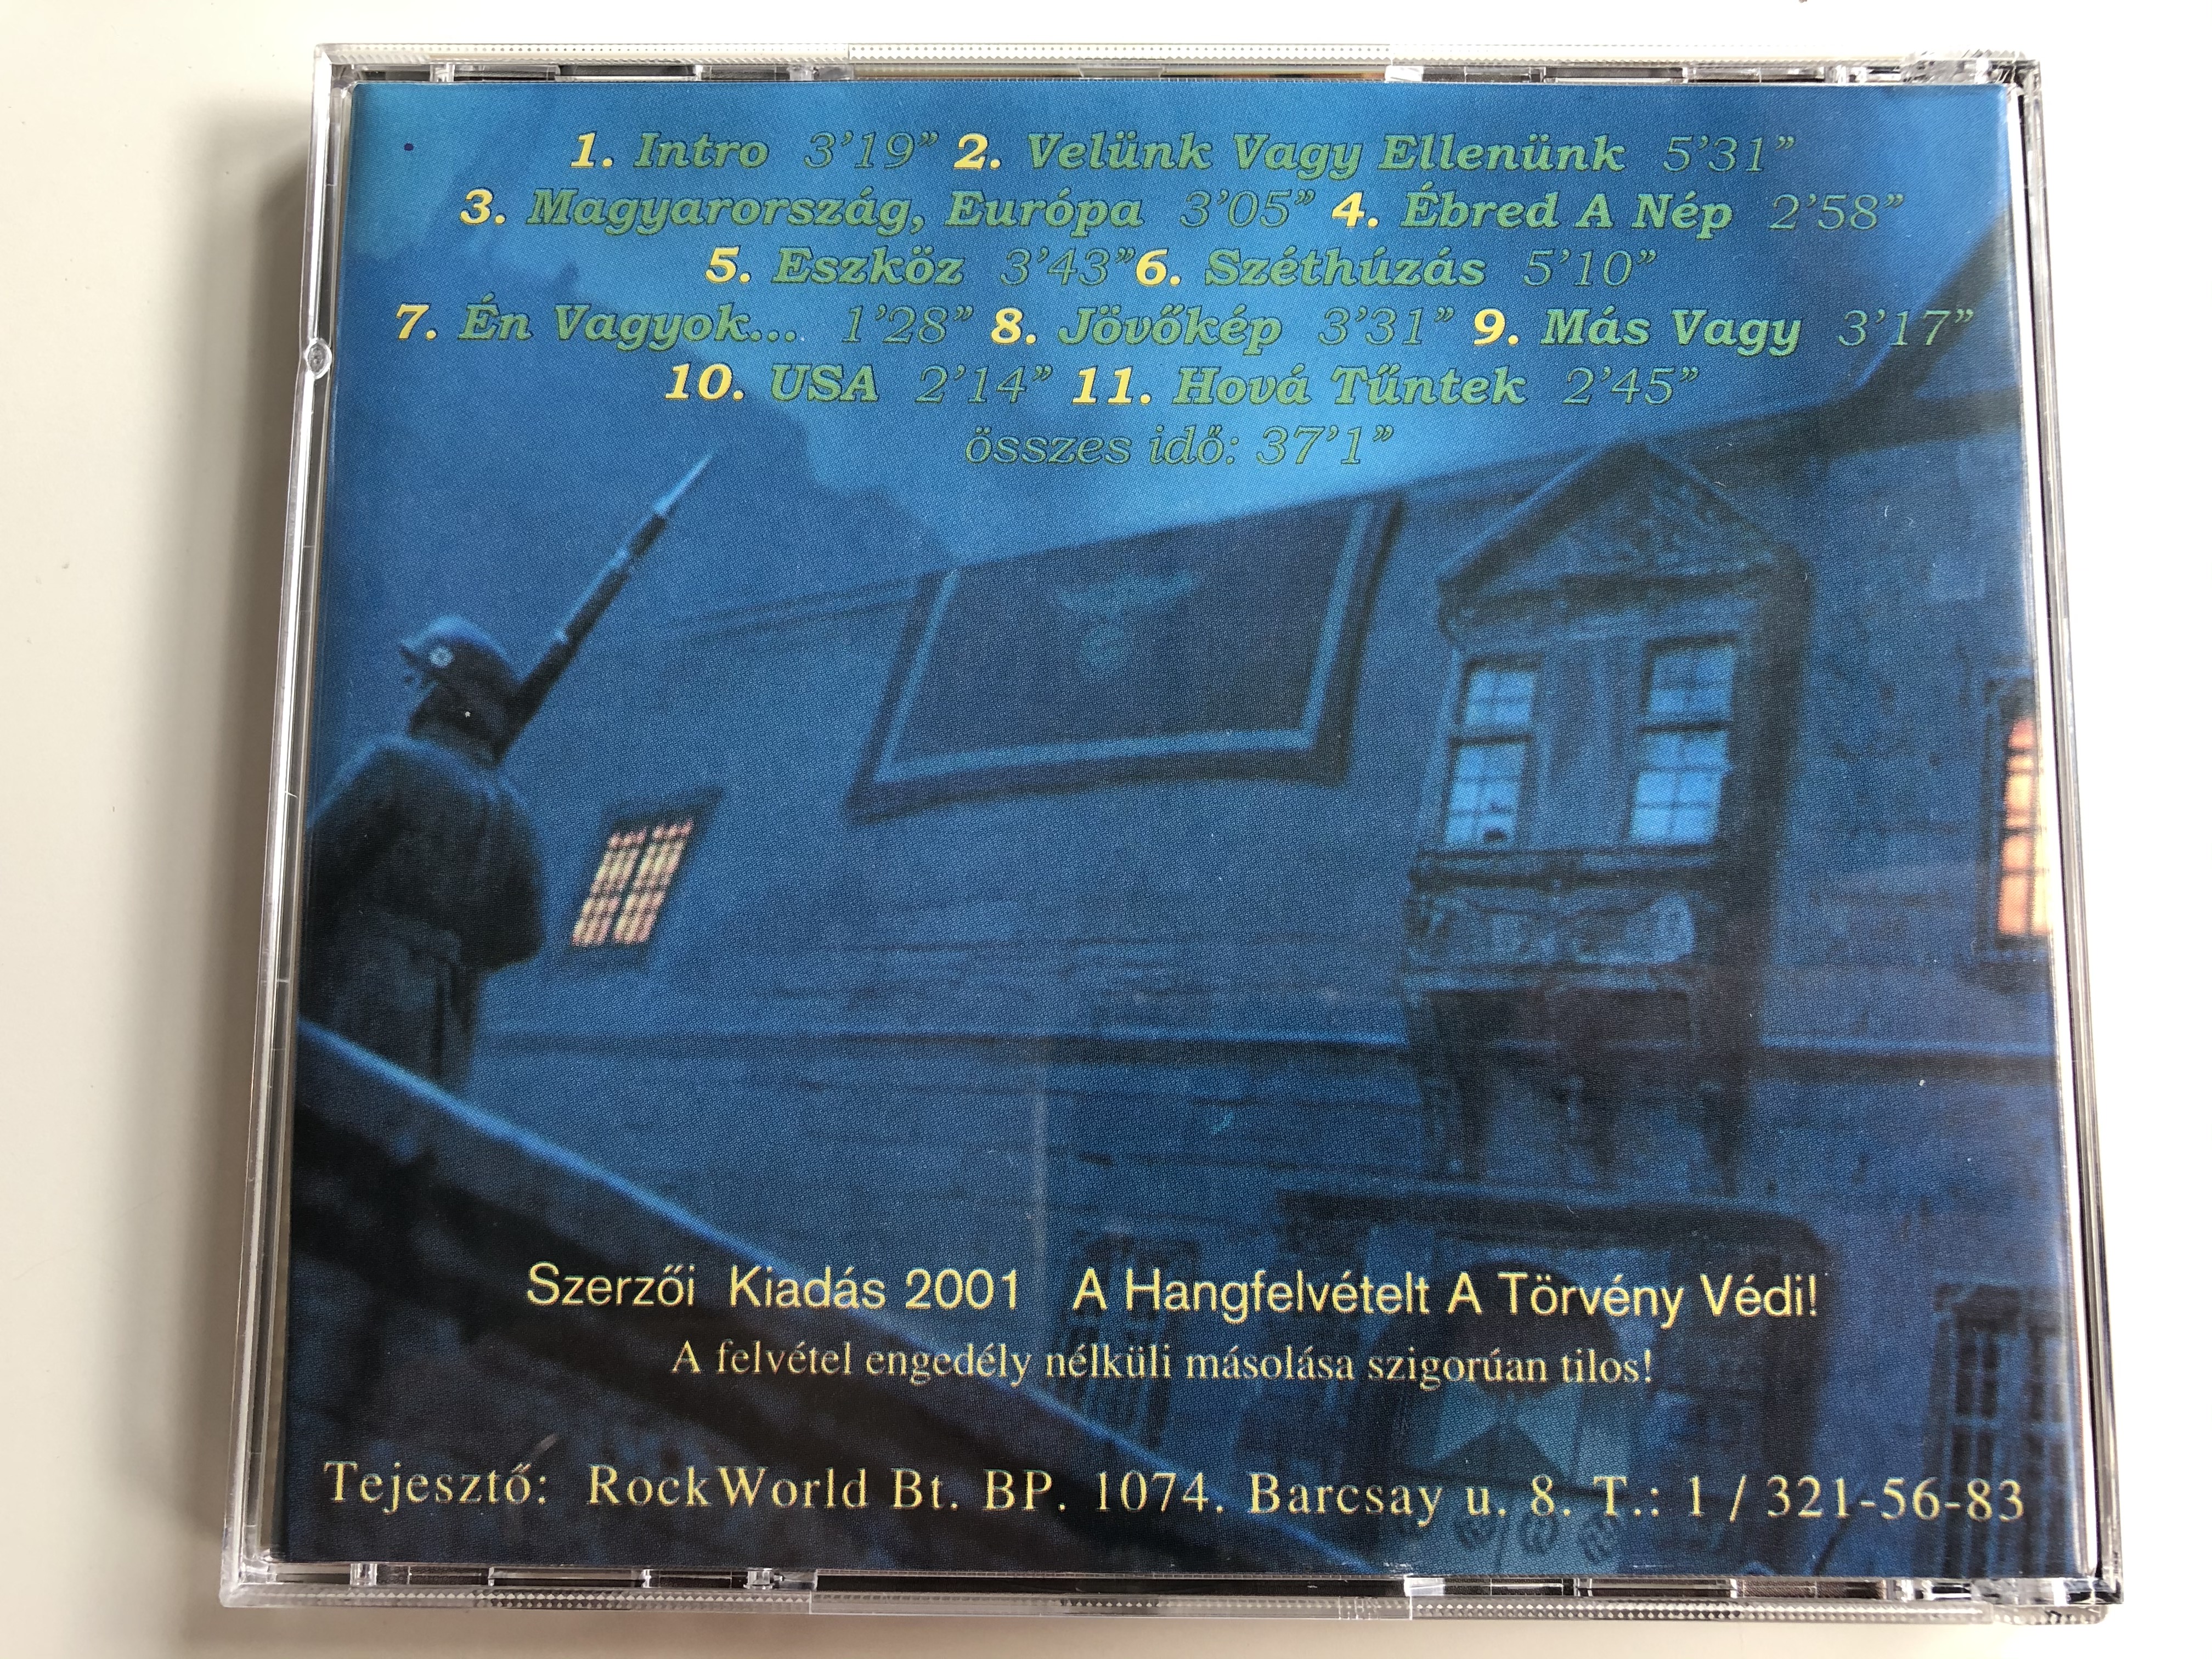 titkolt-ellen-ll-s-vel-nk-vagy-ellen-nk-rockworld-audio-cd-2001-te-003-4-.jpg